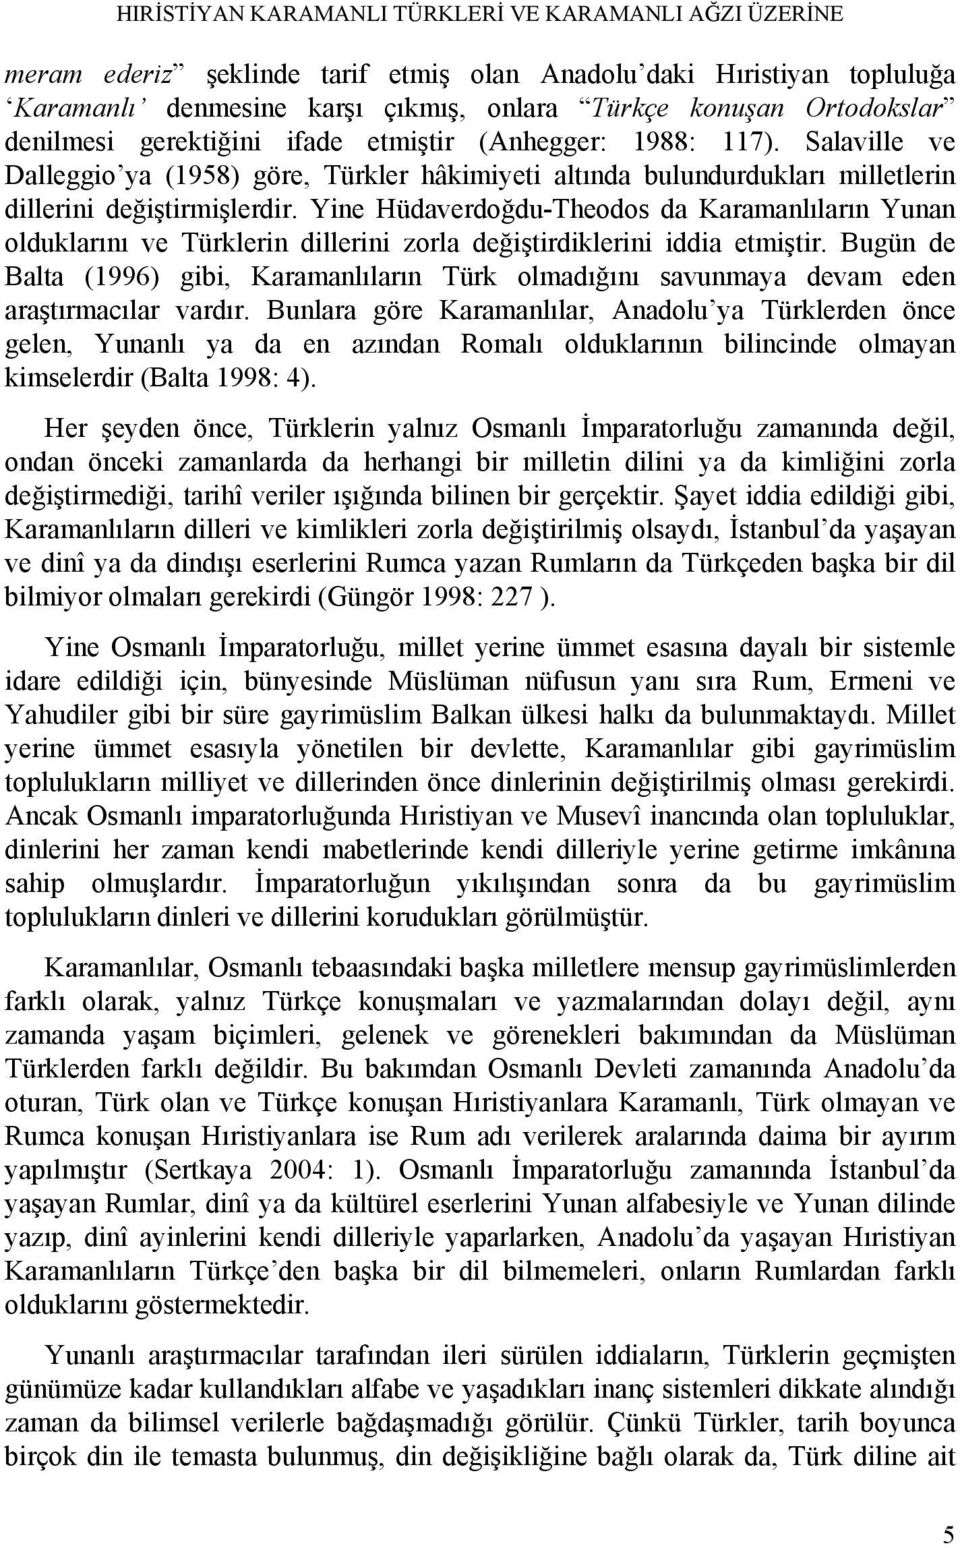 Yine Hüdaverdoğdu-Theodos da Karamanlıların Yunan olduklarını ve Türklerin dillerini zorla değiştirdiklerini iddia etmiştir.